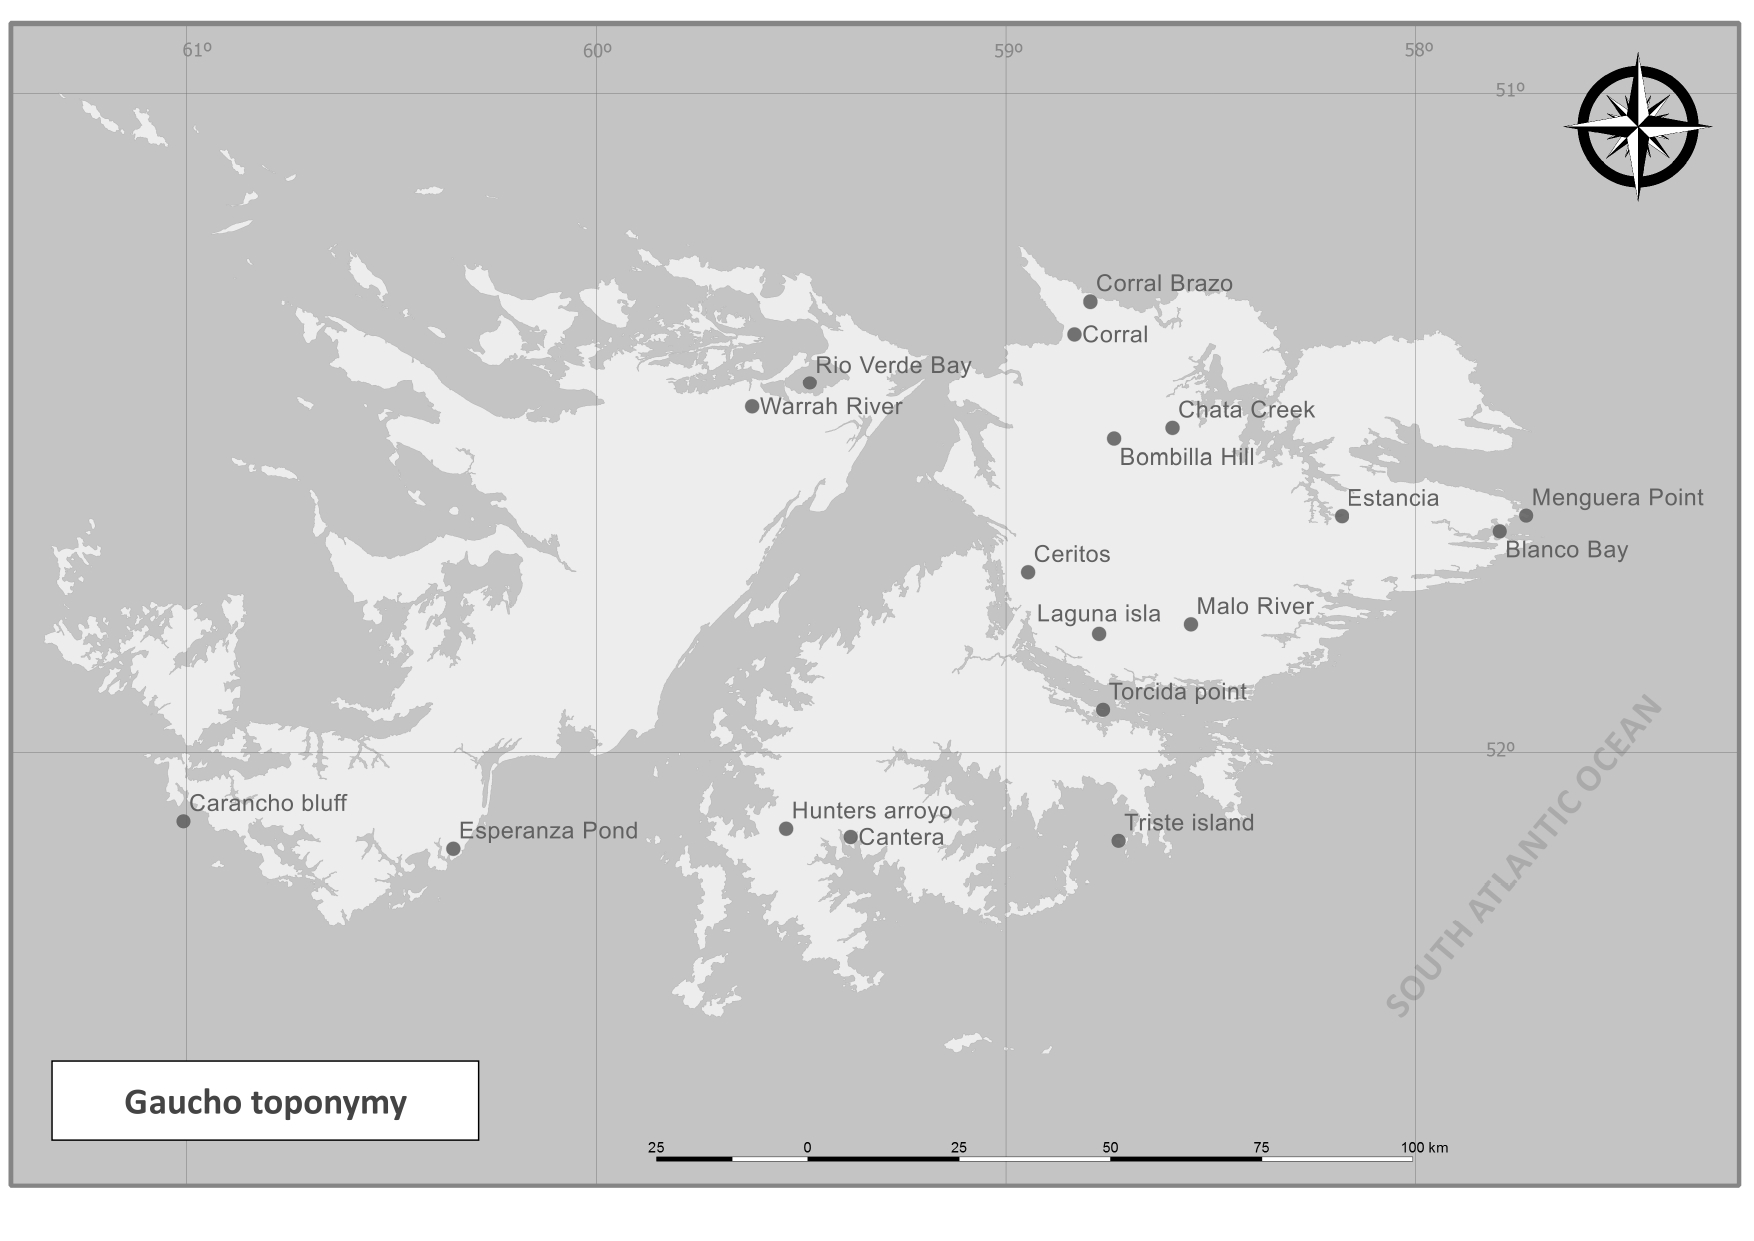 Ejemplos de la herencia que dejaron los gauchos en los topónimos en las islas Malvinas / Falklands.